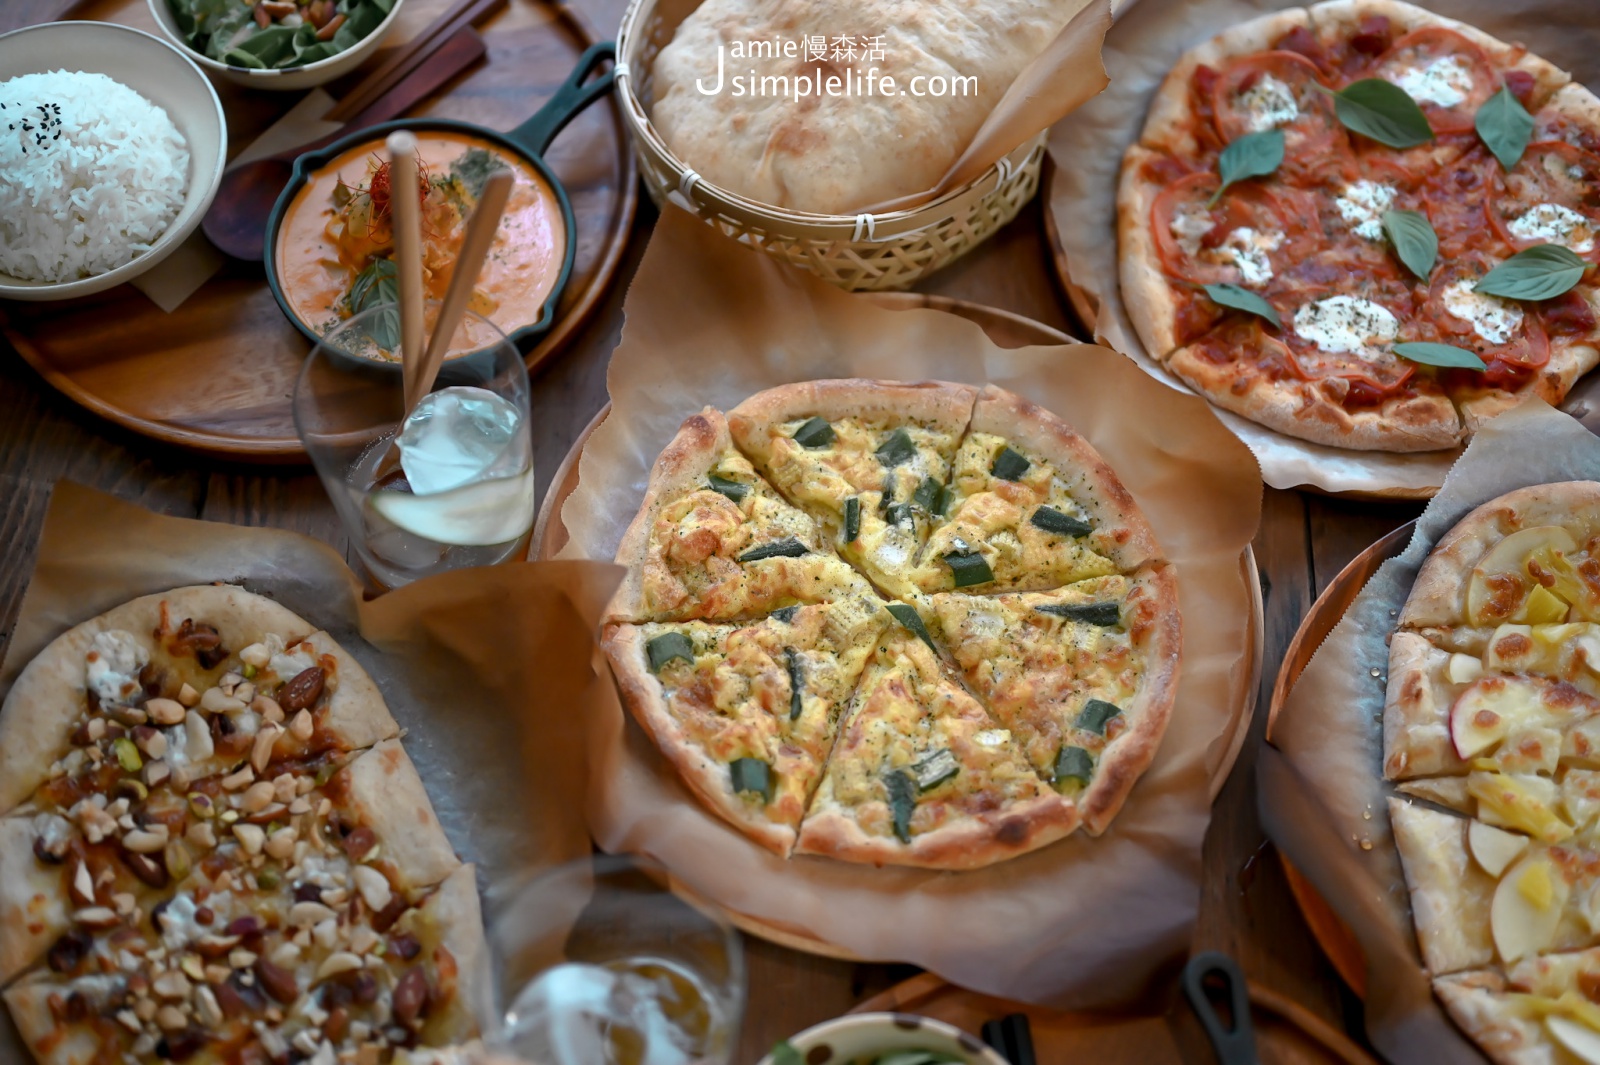 嘉義市「穀谷2.0」餐點 拍蘋果蜜糖、穀谷幅圓堅果、穀谷好日子披薩、吻仔魚烘蛋披薩